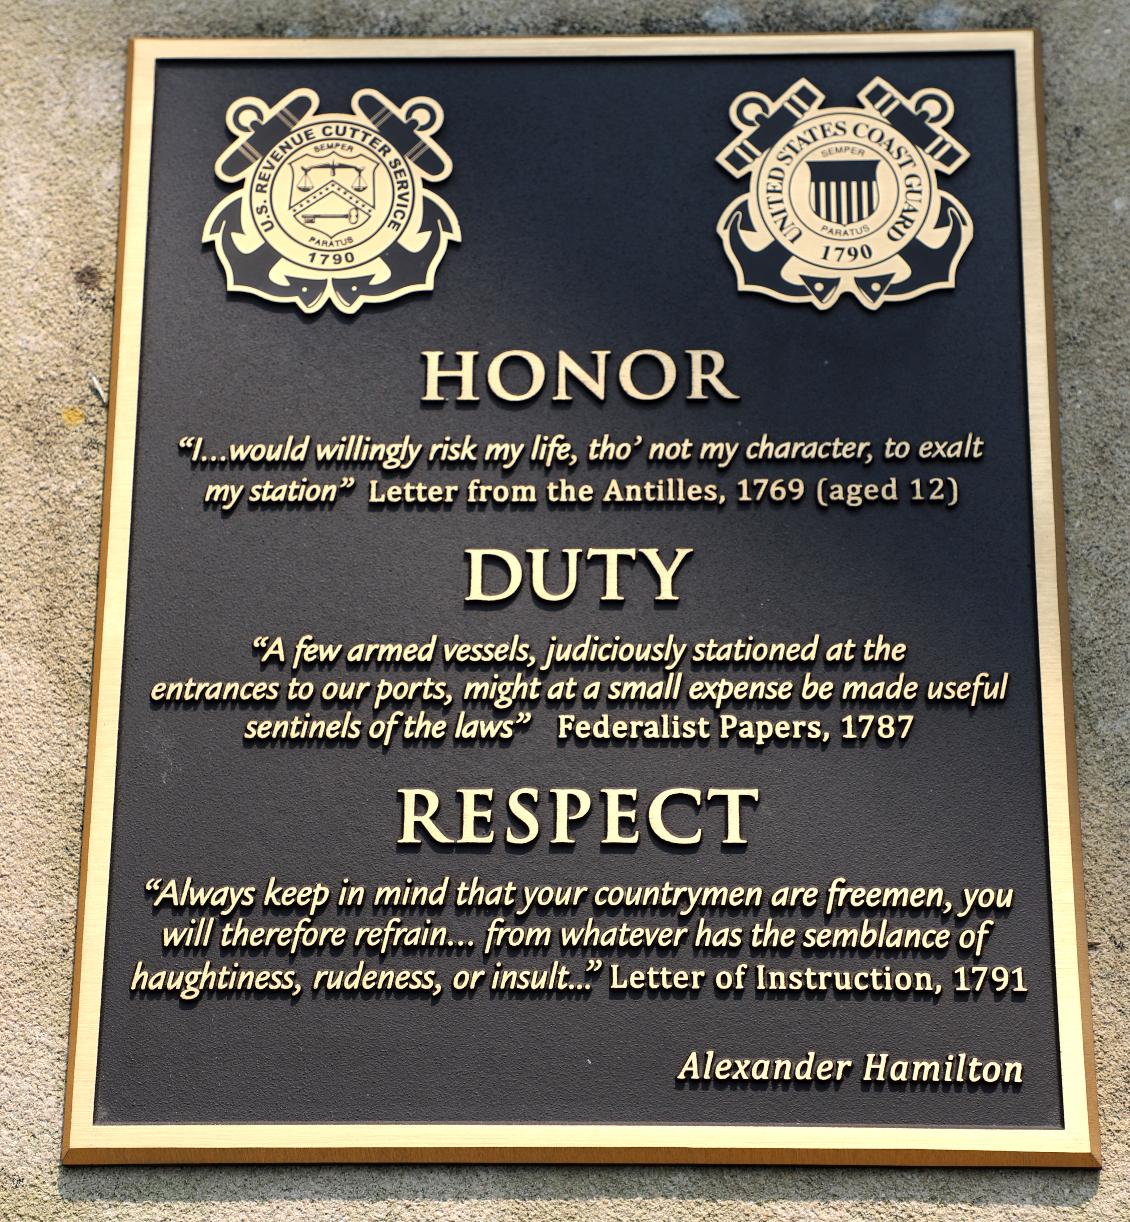 U.S. Coast Guard Academy - Hamilton Honor Duty and Respect